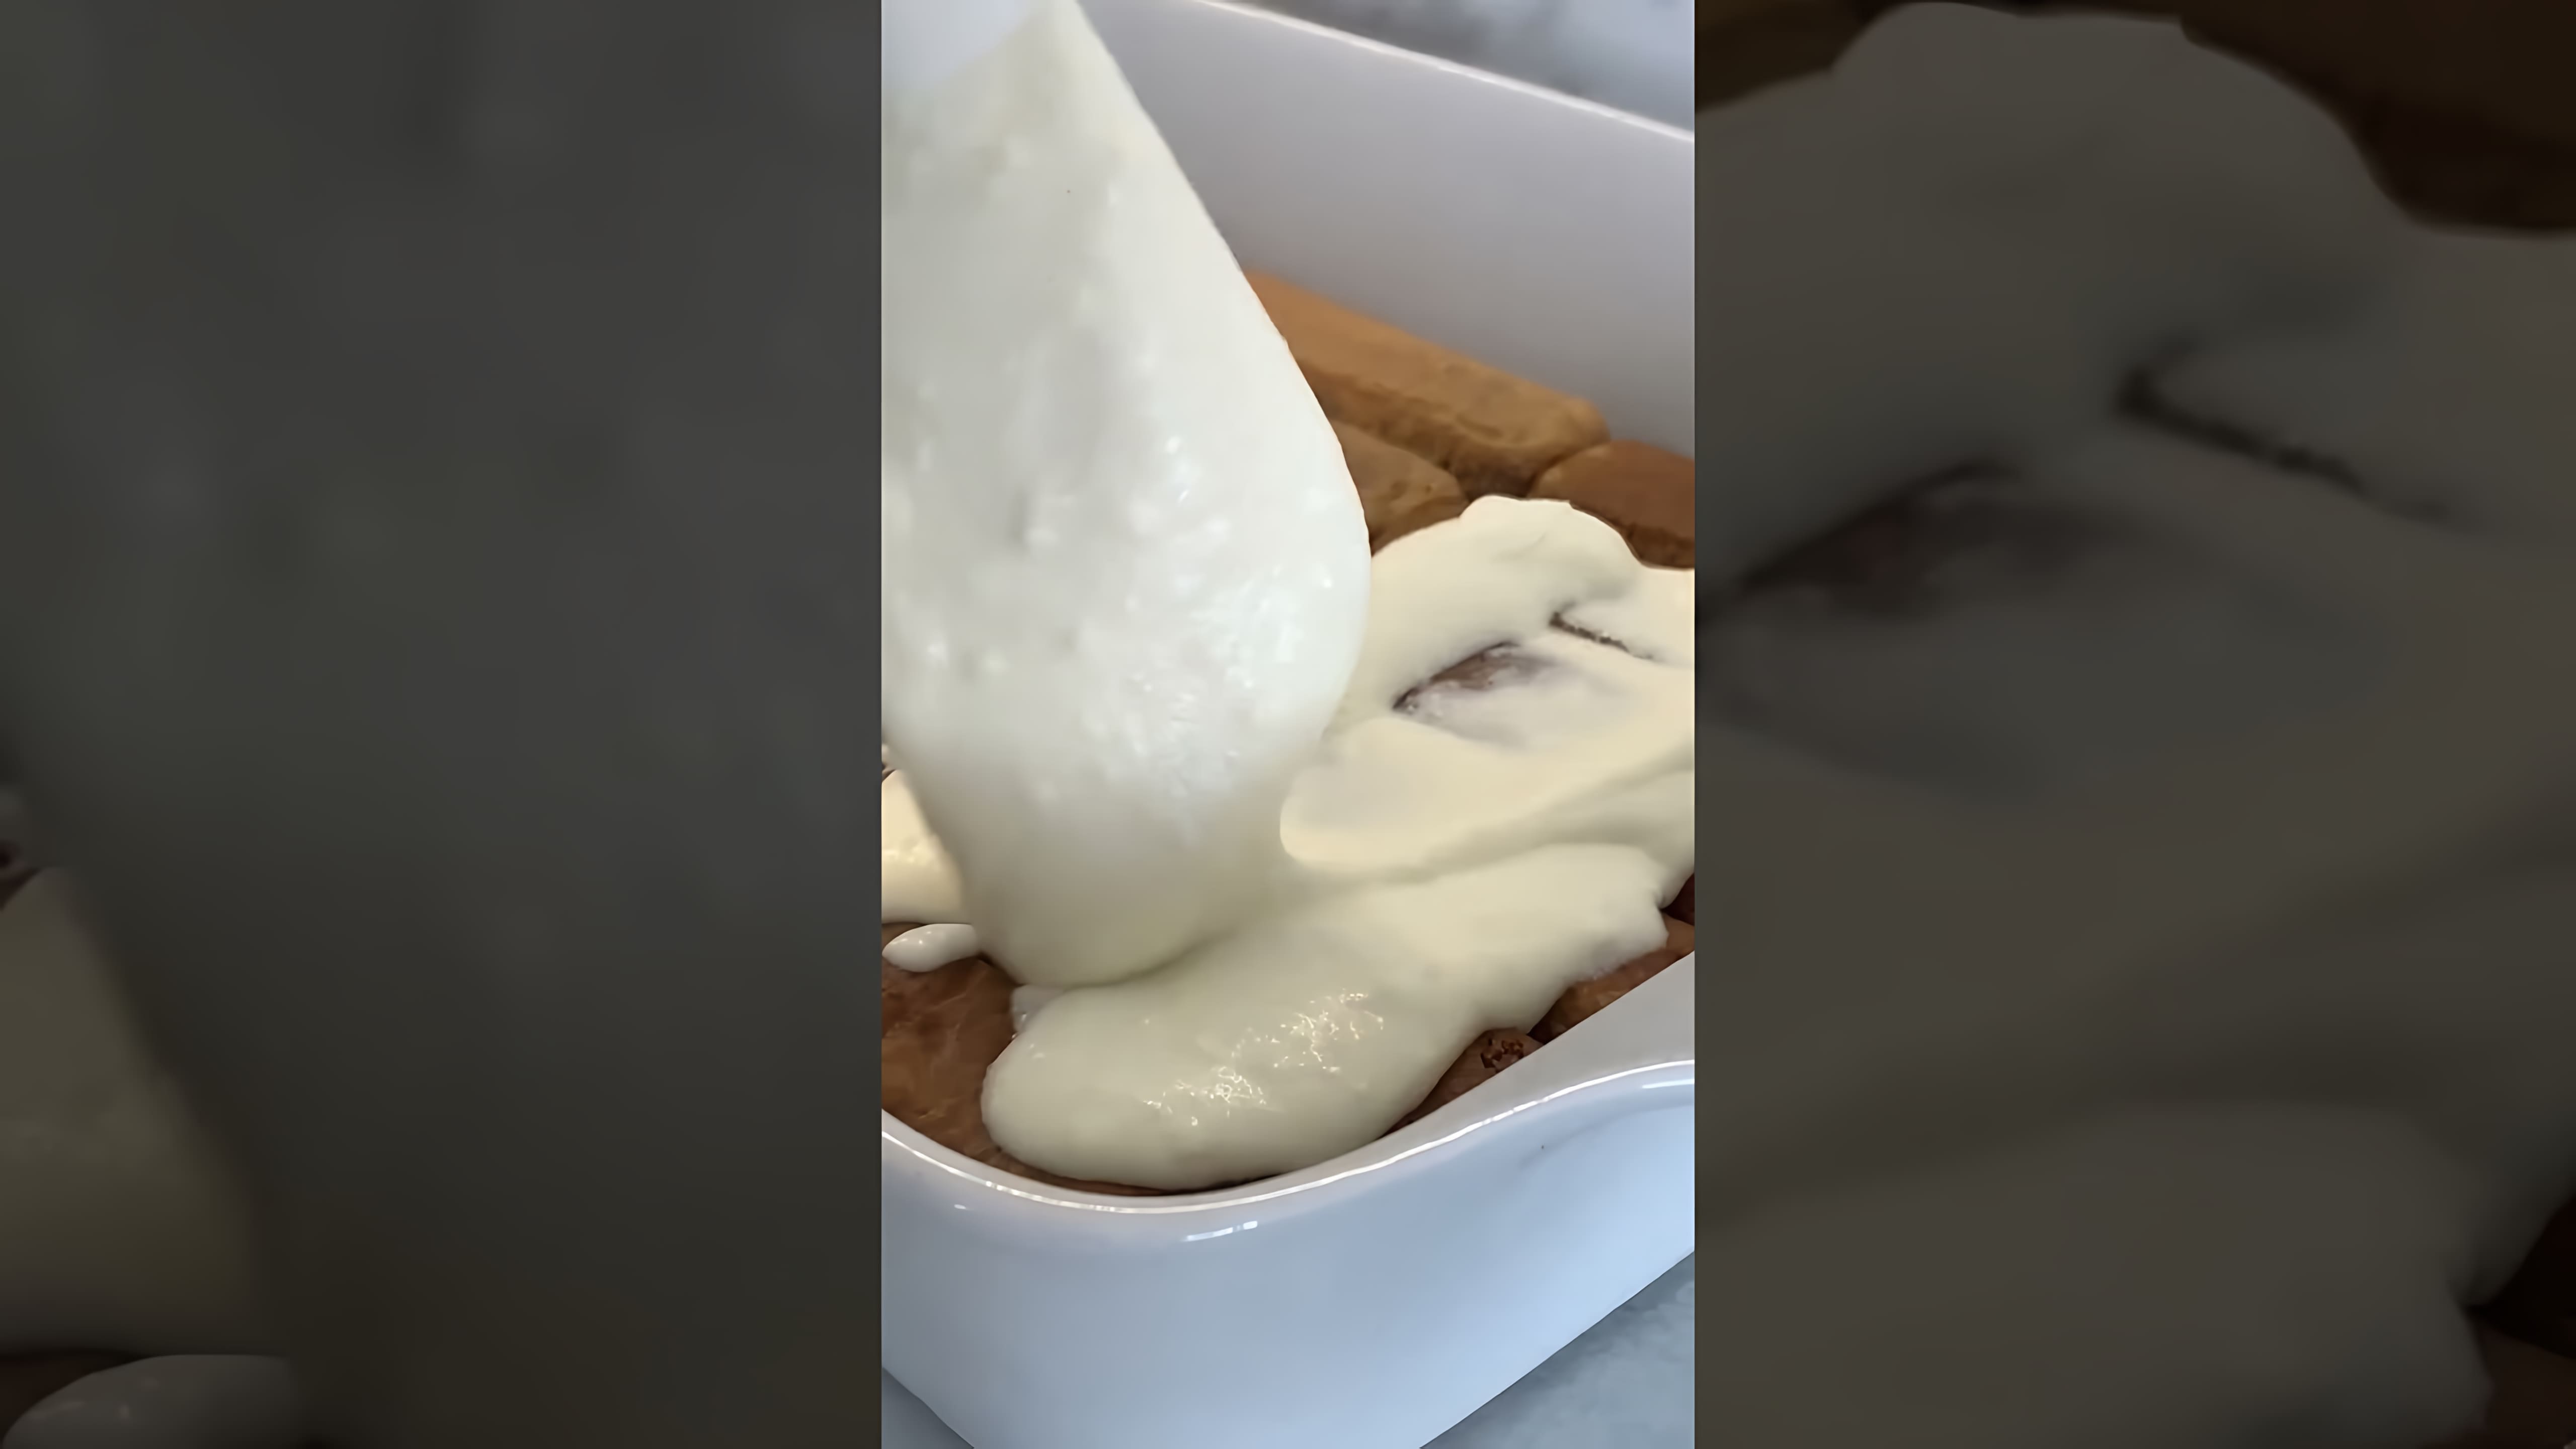 В данном видео демонстрируется рецепт приготовления десерта тирамису